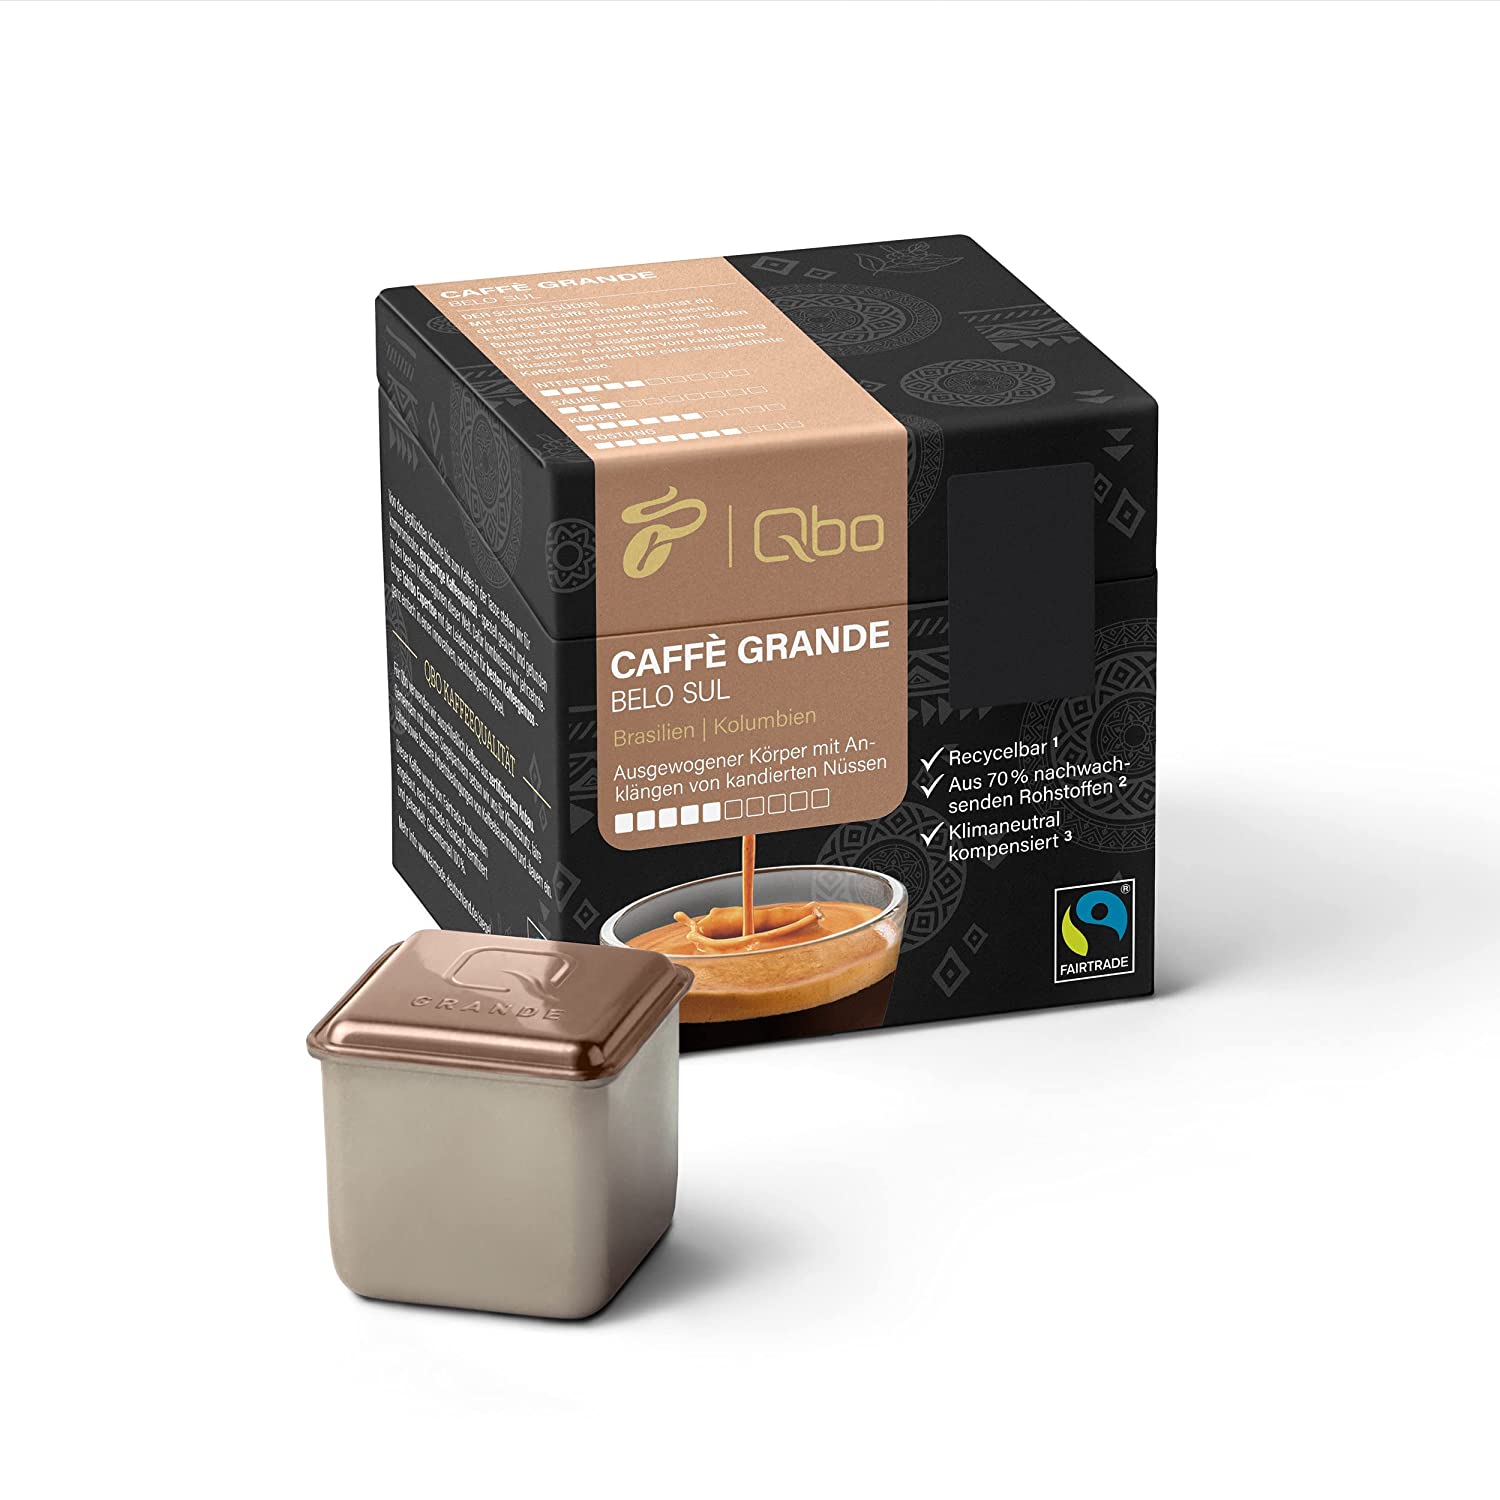 Tchibo Qbo Caffè Grande Belo Sul Premium Kaffeekapseln, 8 Stück (Caffè Grande, Intensität 5/10, ausgewogen und nussig), nachhaltig, aus 70% nachwachsenden Rohstoffen & klimaneutral kompensiert